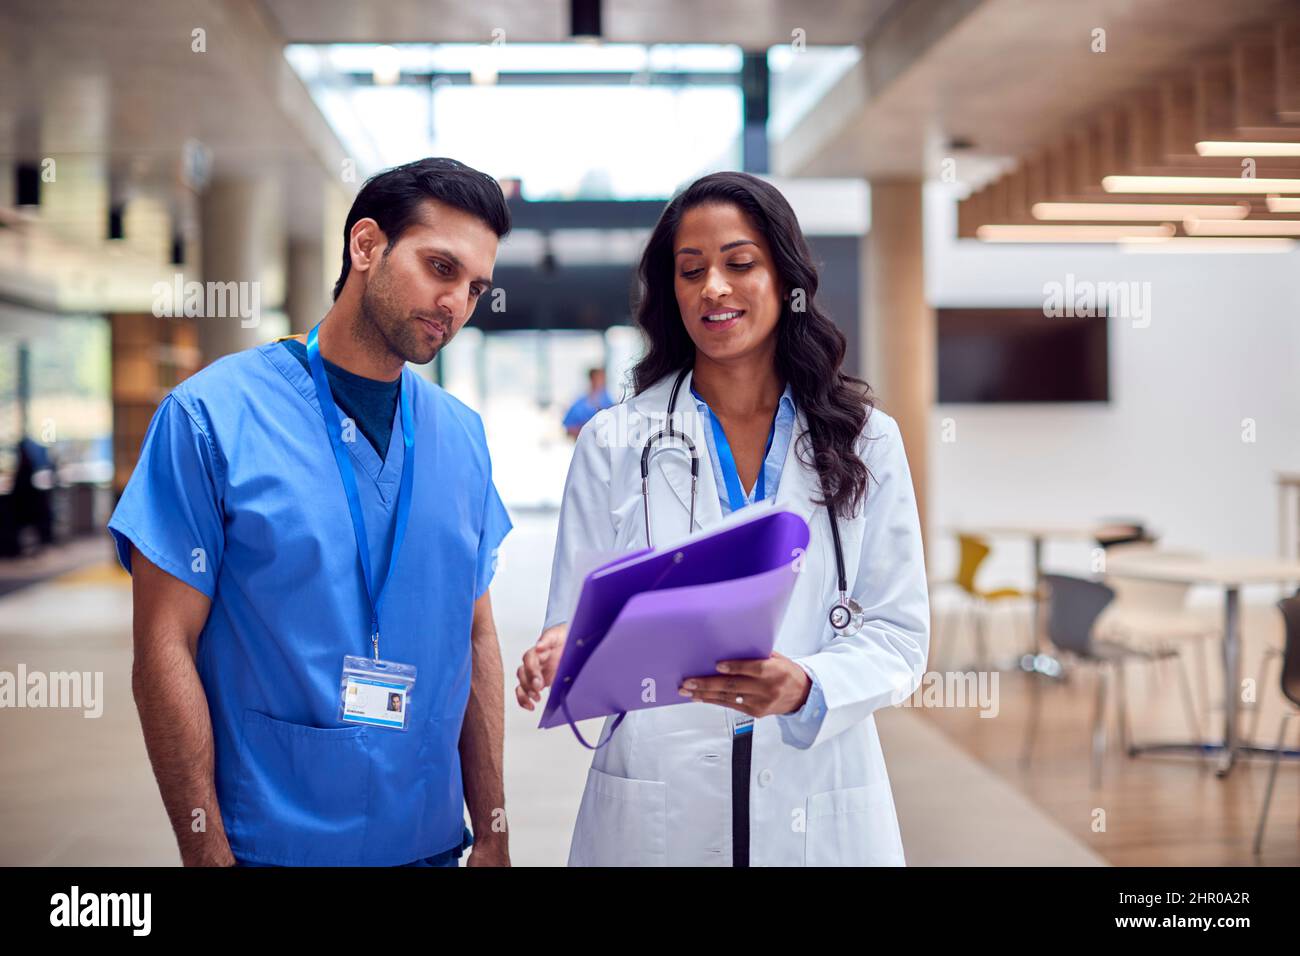 El personal médico de White Coat y Scrubs discutiendo las notas del paciente tienen una reunión informal en el hospital Foto de stock